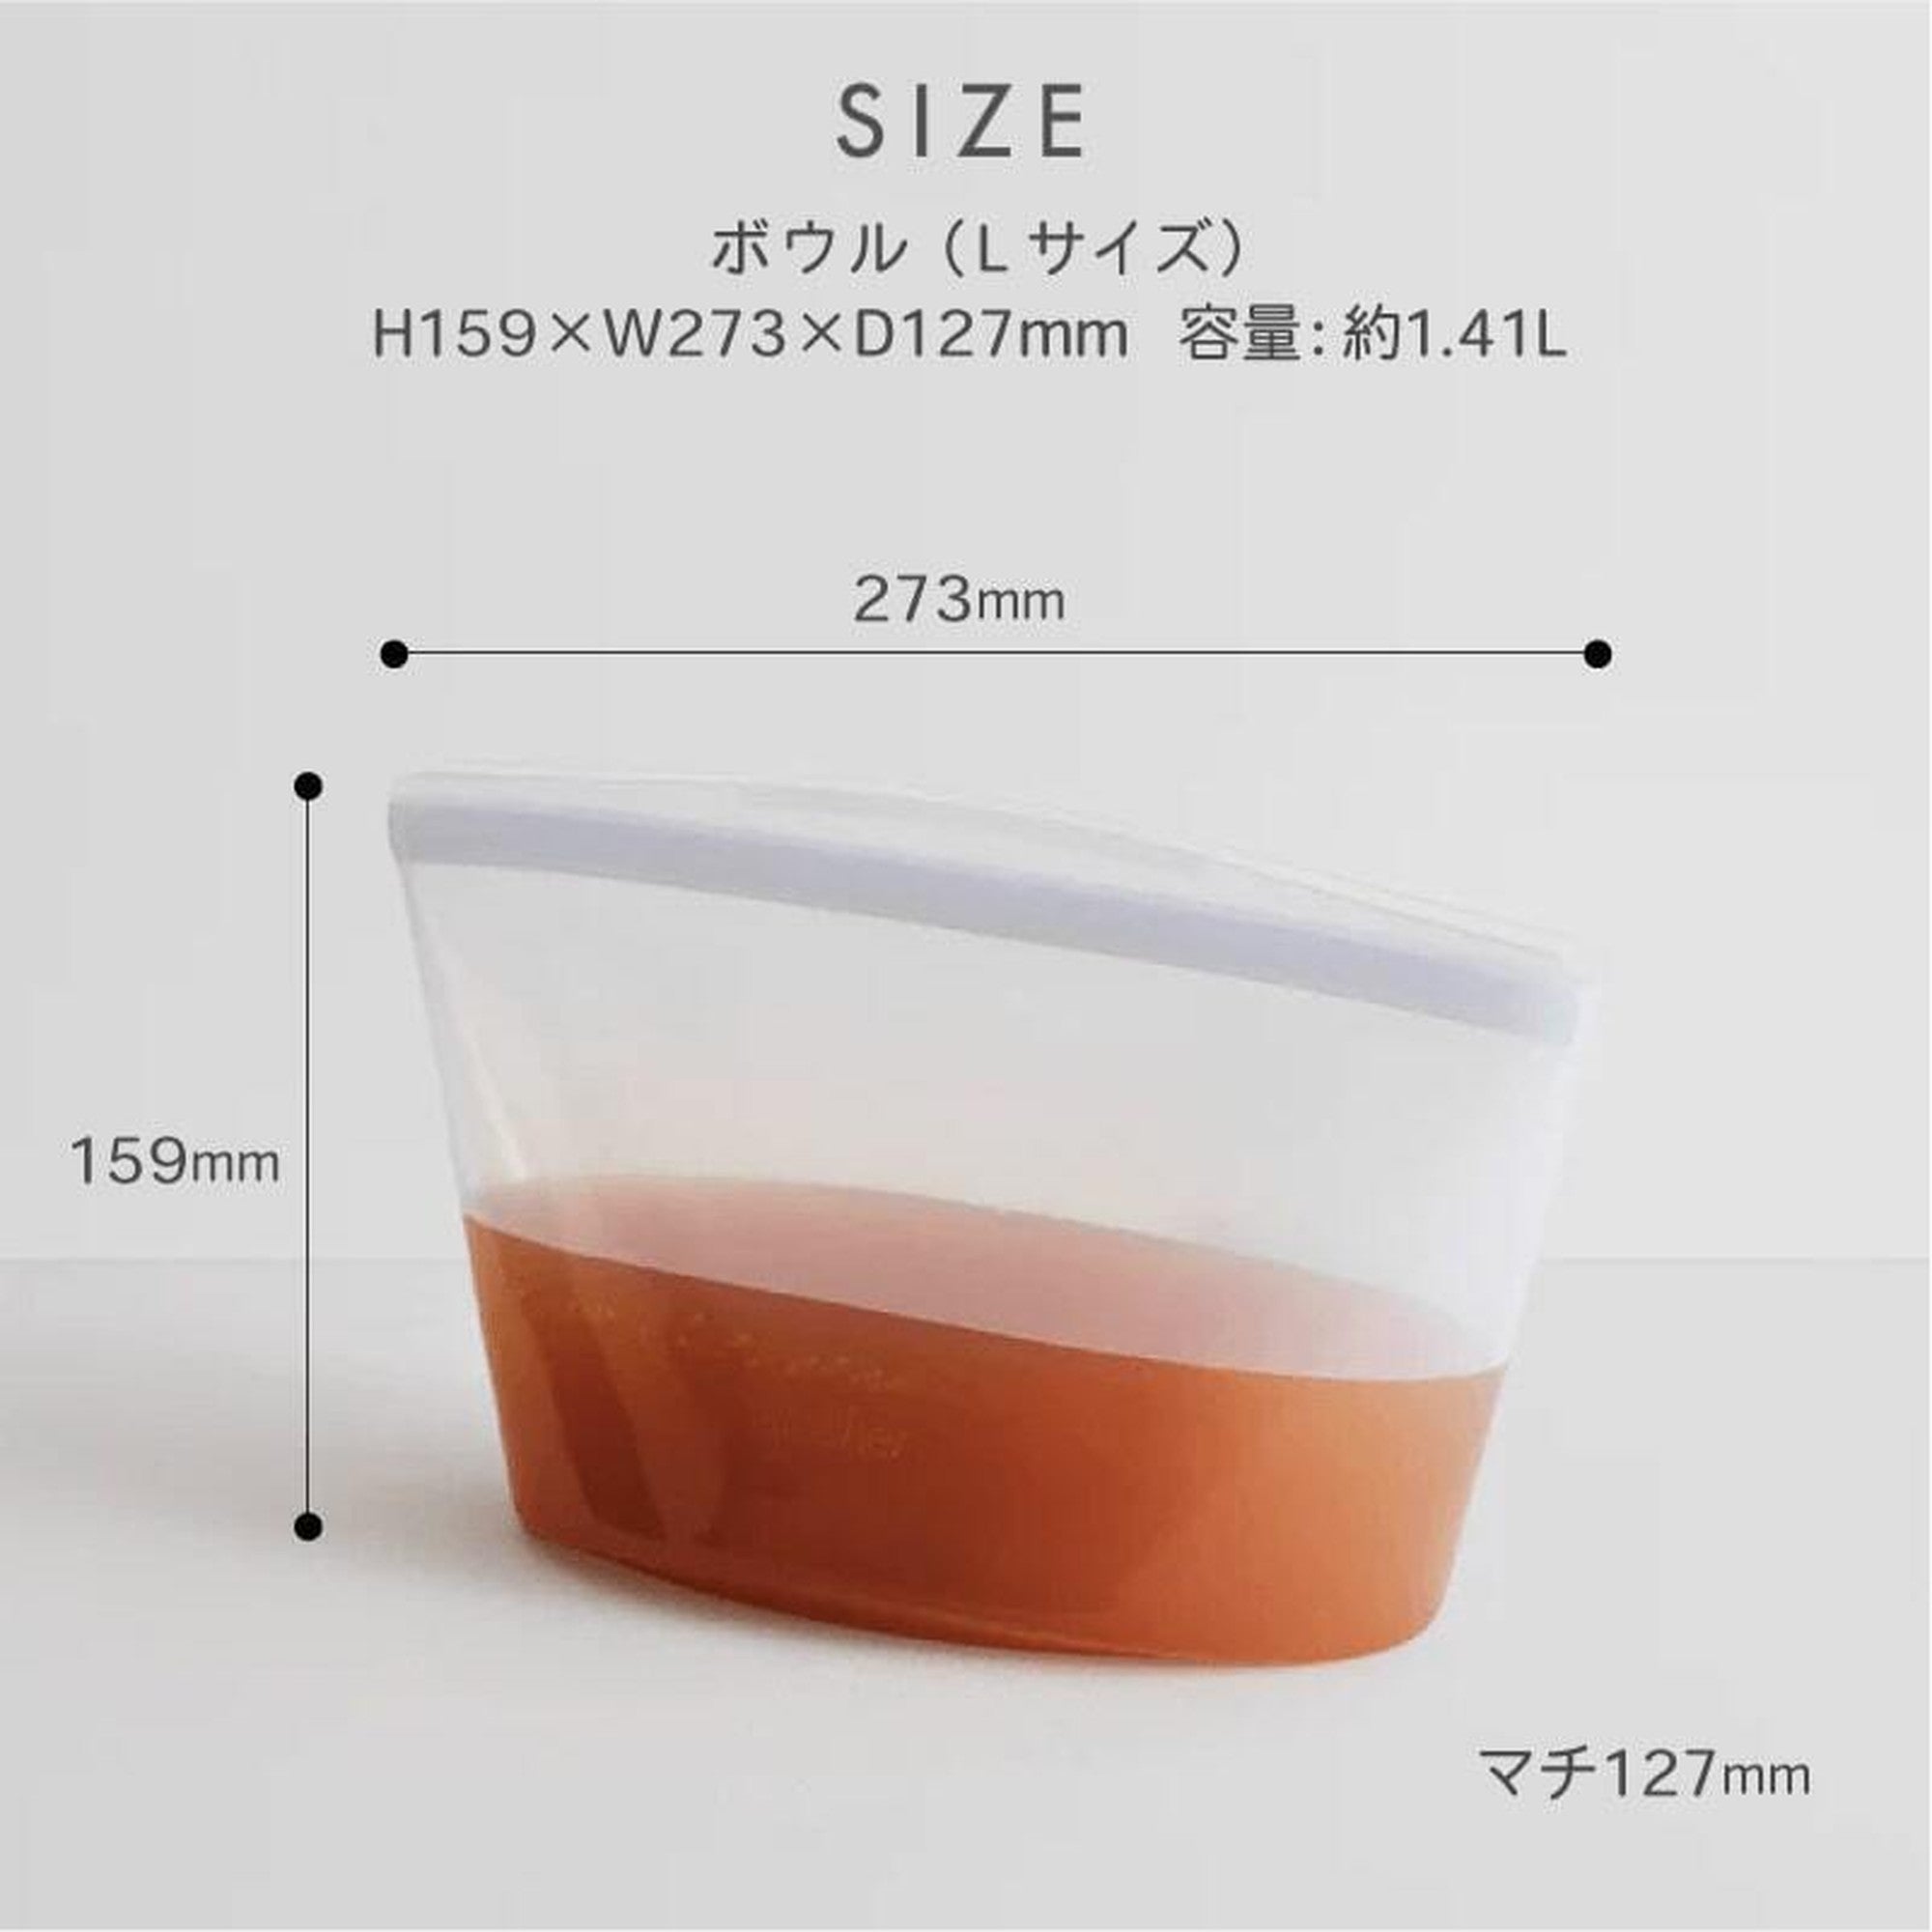 スタッシャー シリコンバッグ ボウル Lサイズ 新モデル stasher ボウルコレクション 日本正規品 2色